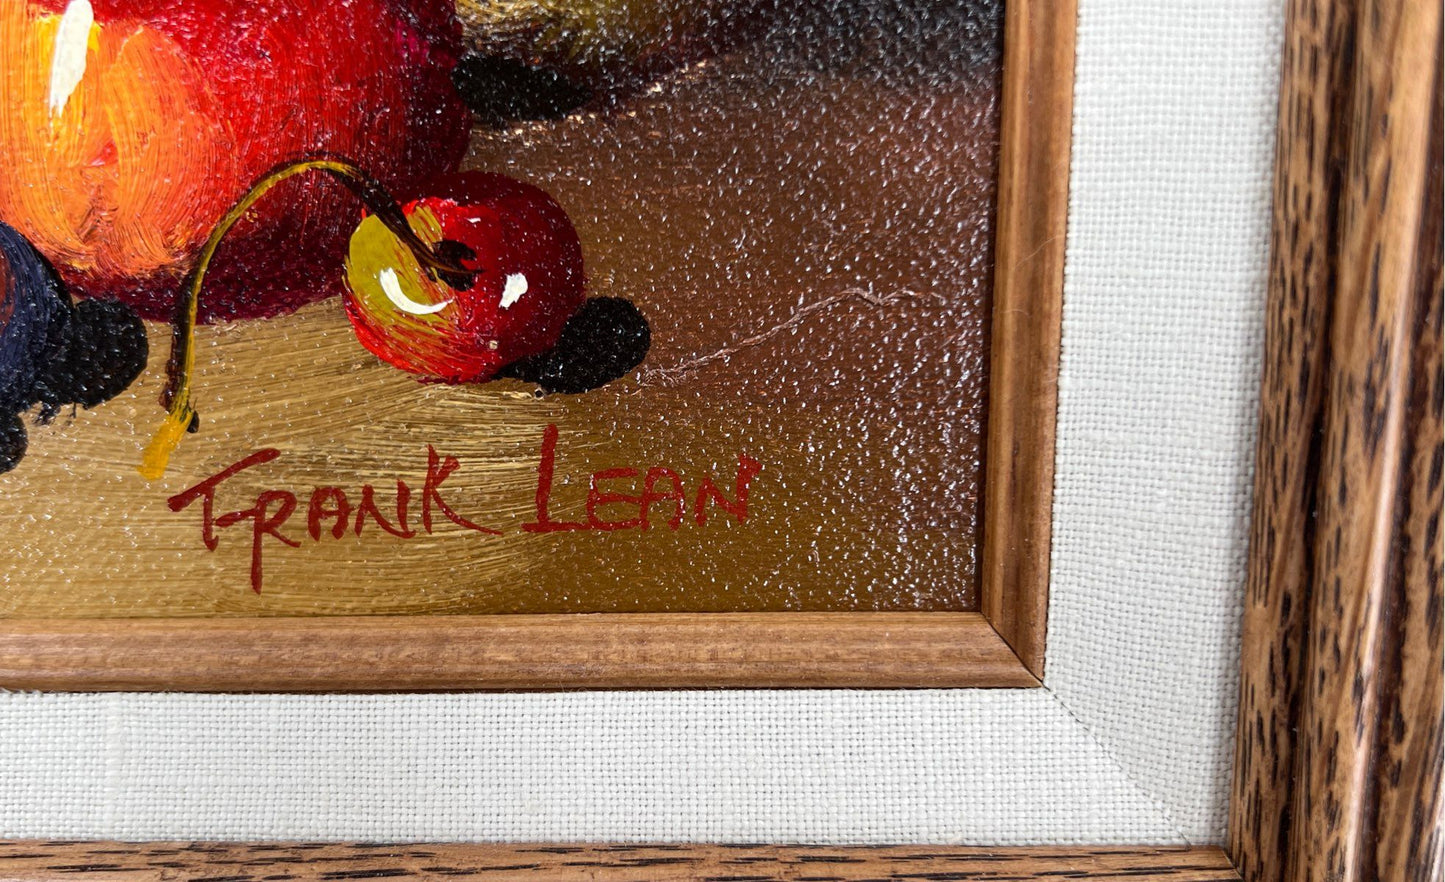 Vintage Frank Lean Still Life Fruit Basket Painting On Canvas-Signed & Framed